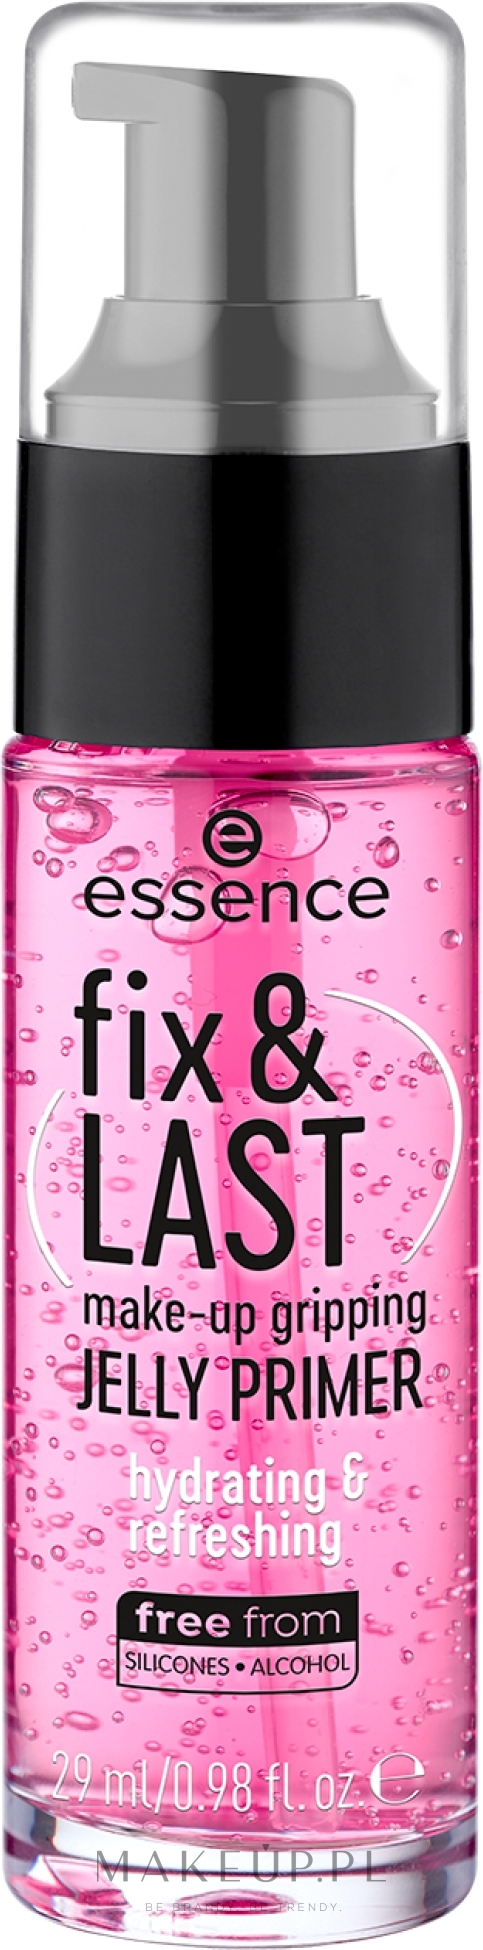 Żelowy primer do twarzy - Essence Fix & Last Make-Up Gripping Jelly Primer — Zdjęcie 29 ml